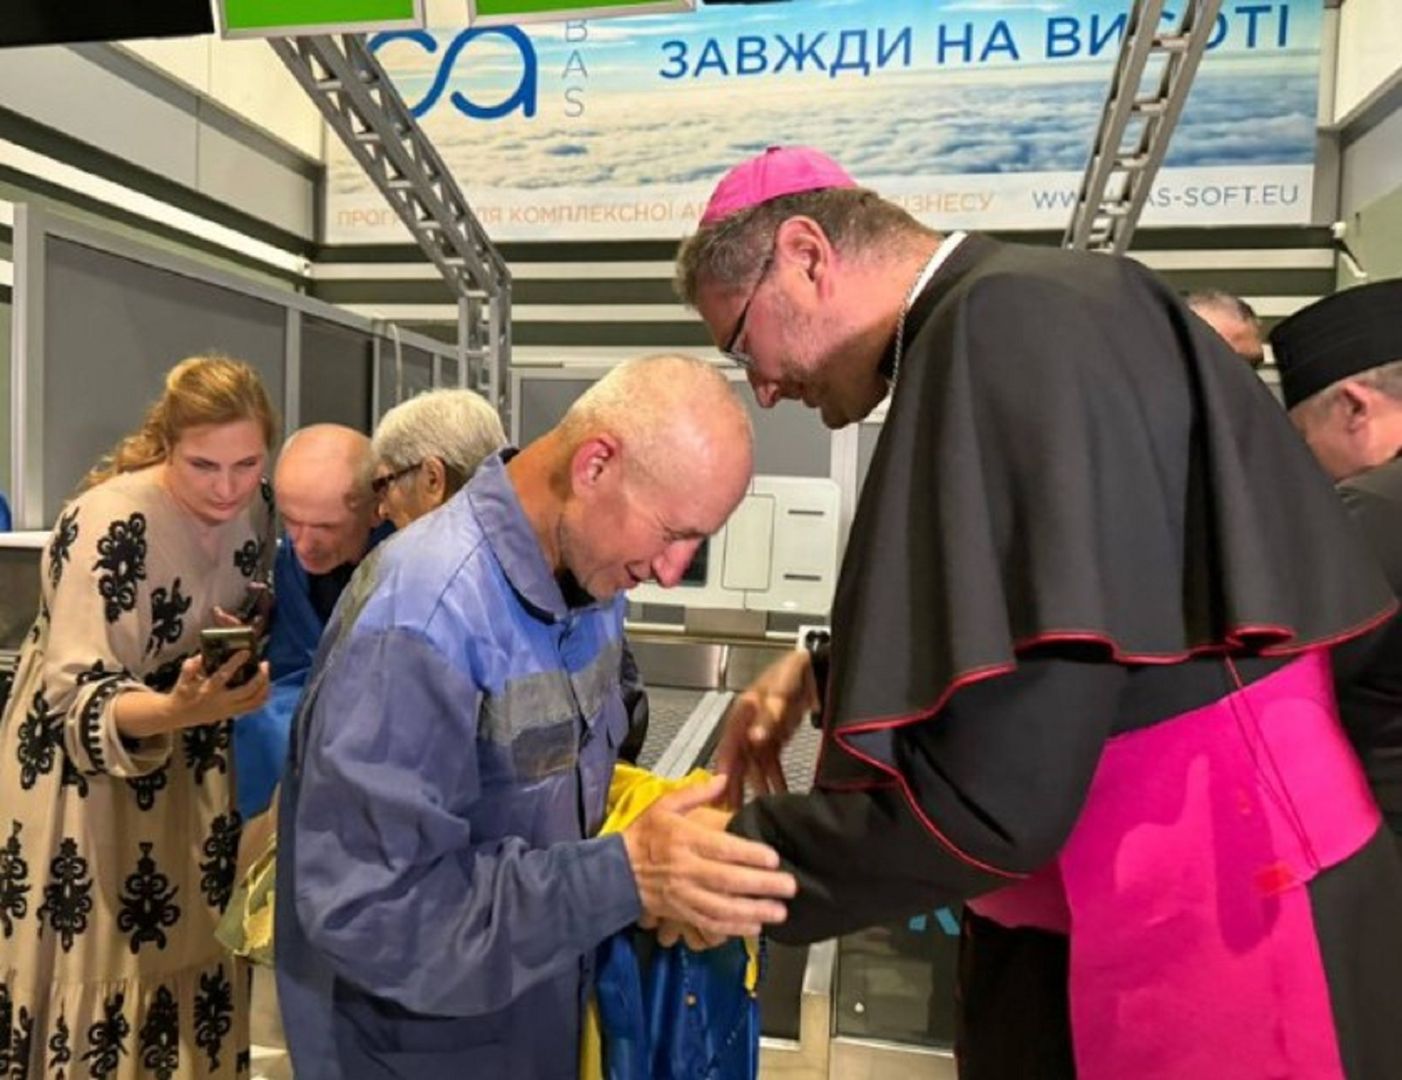 Rosjanie zwolnili dwóch księży z niewoli. Interweniował w ich sprawie Watykan